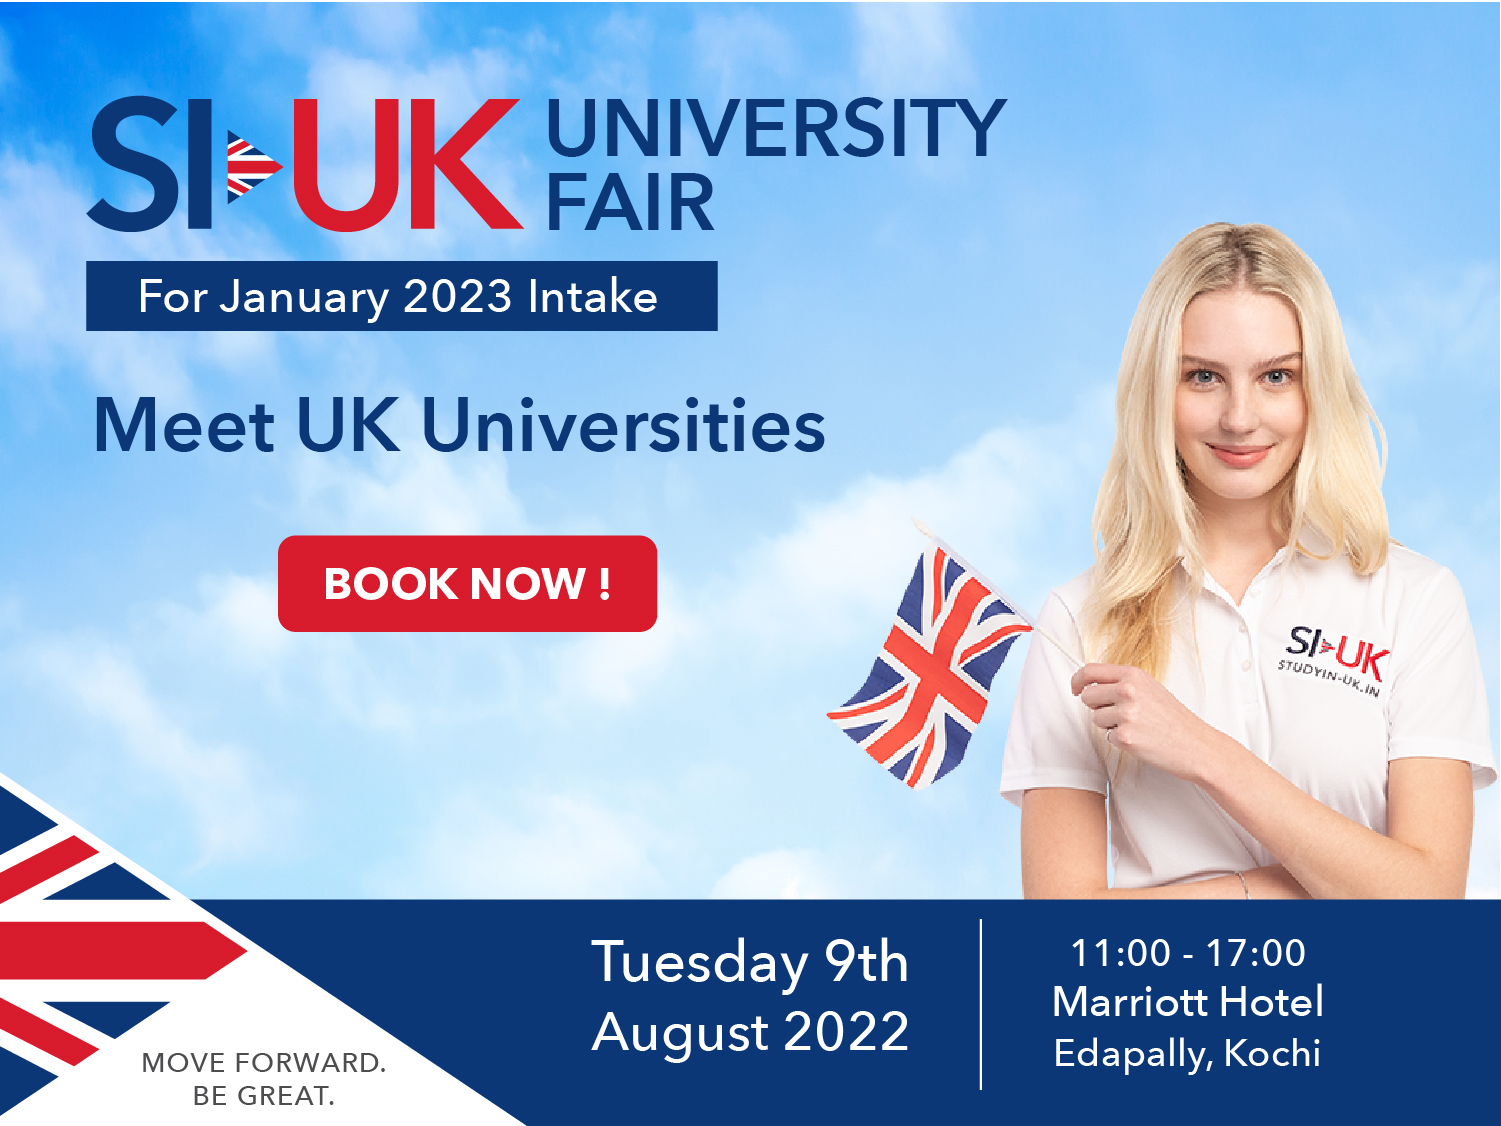 SI-UK University Fair Kochi 2022, Ernakulam, Kerala, India